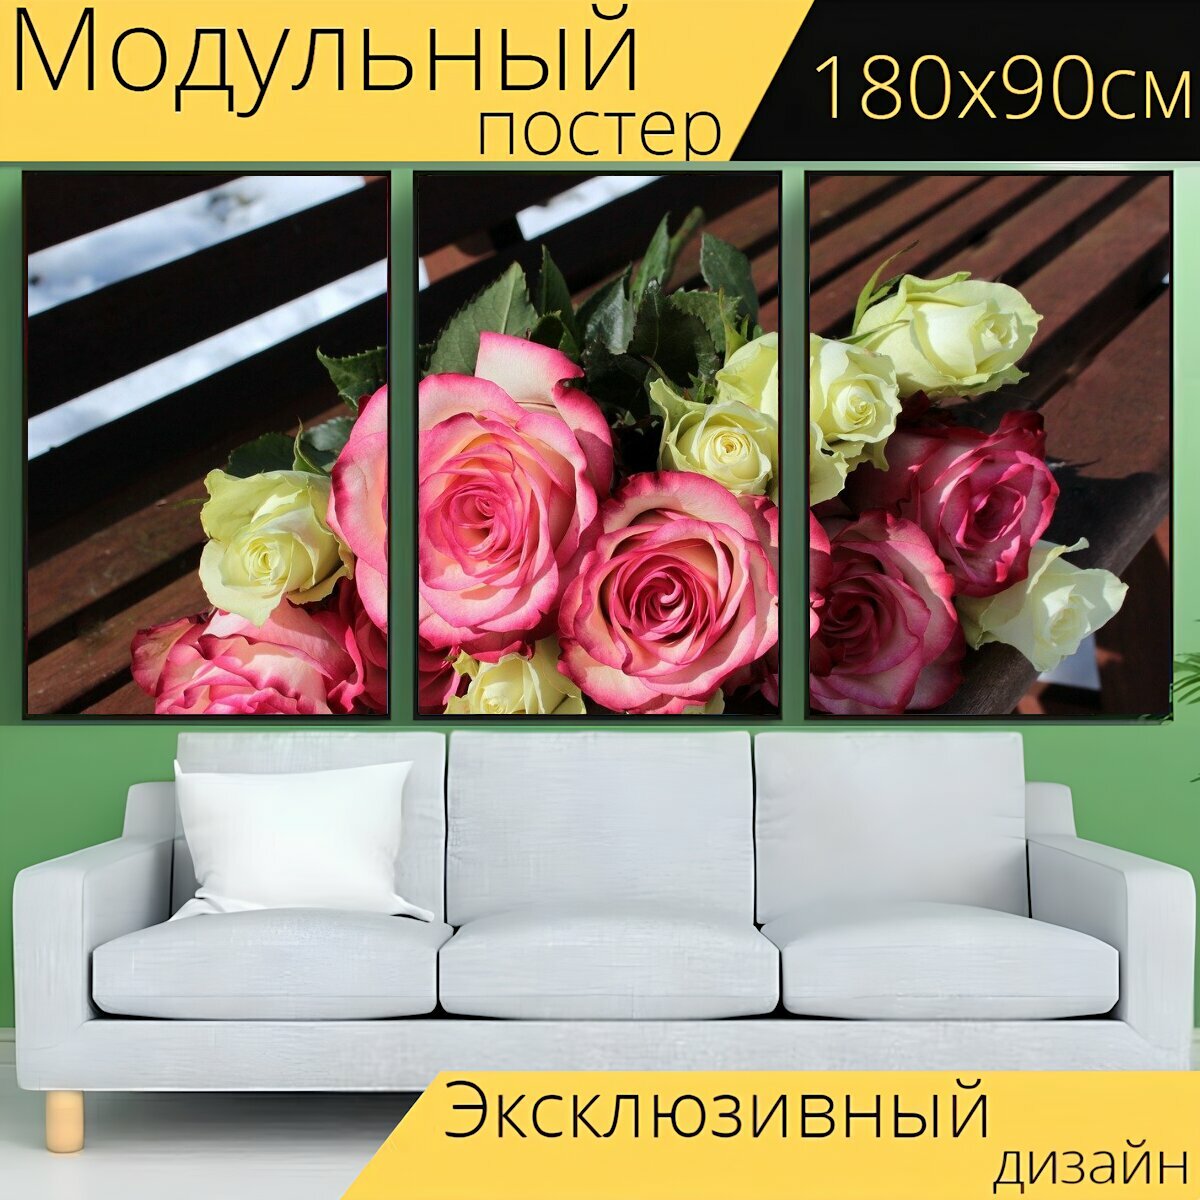 Модульный постер "Розы, букет, скамейка" 180 x 90 см. для интерьера